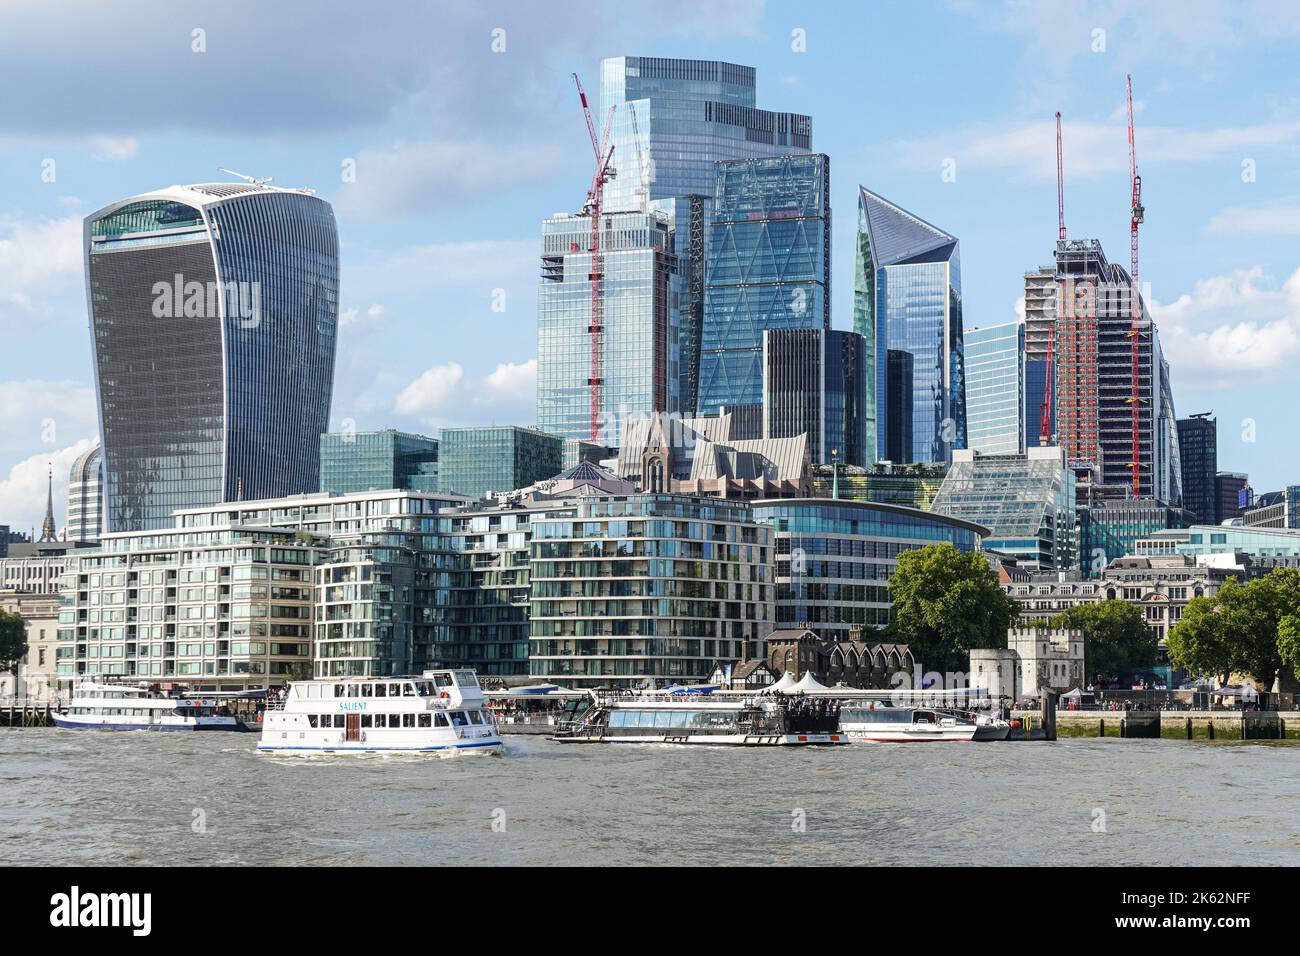 The City of London, England United Kingdom UK Stock Photo